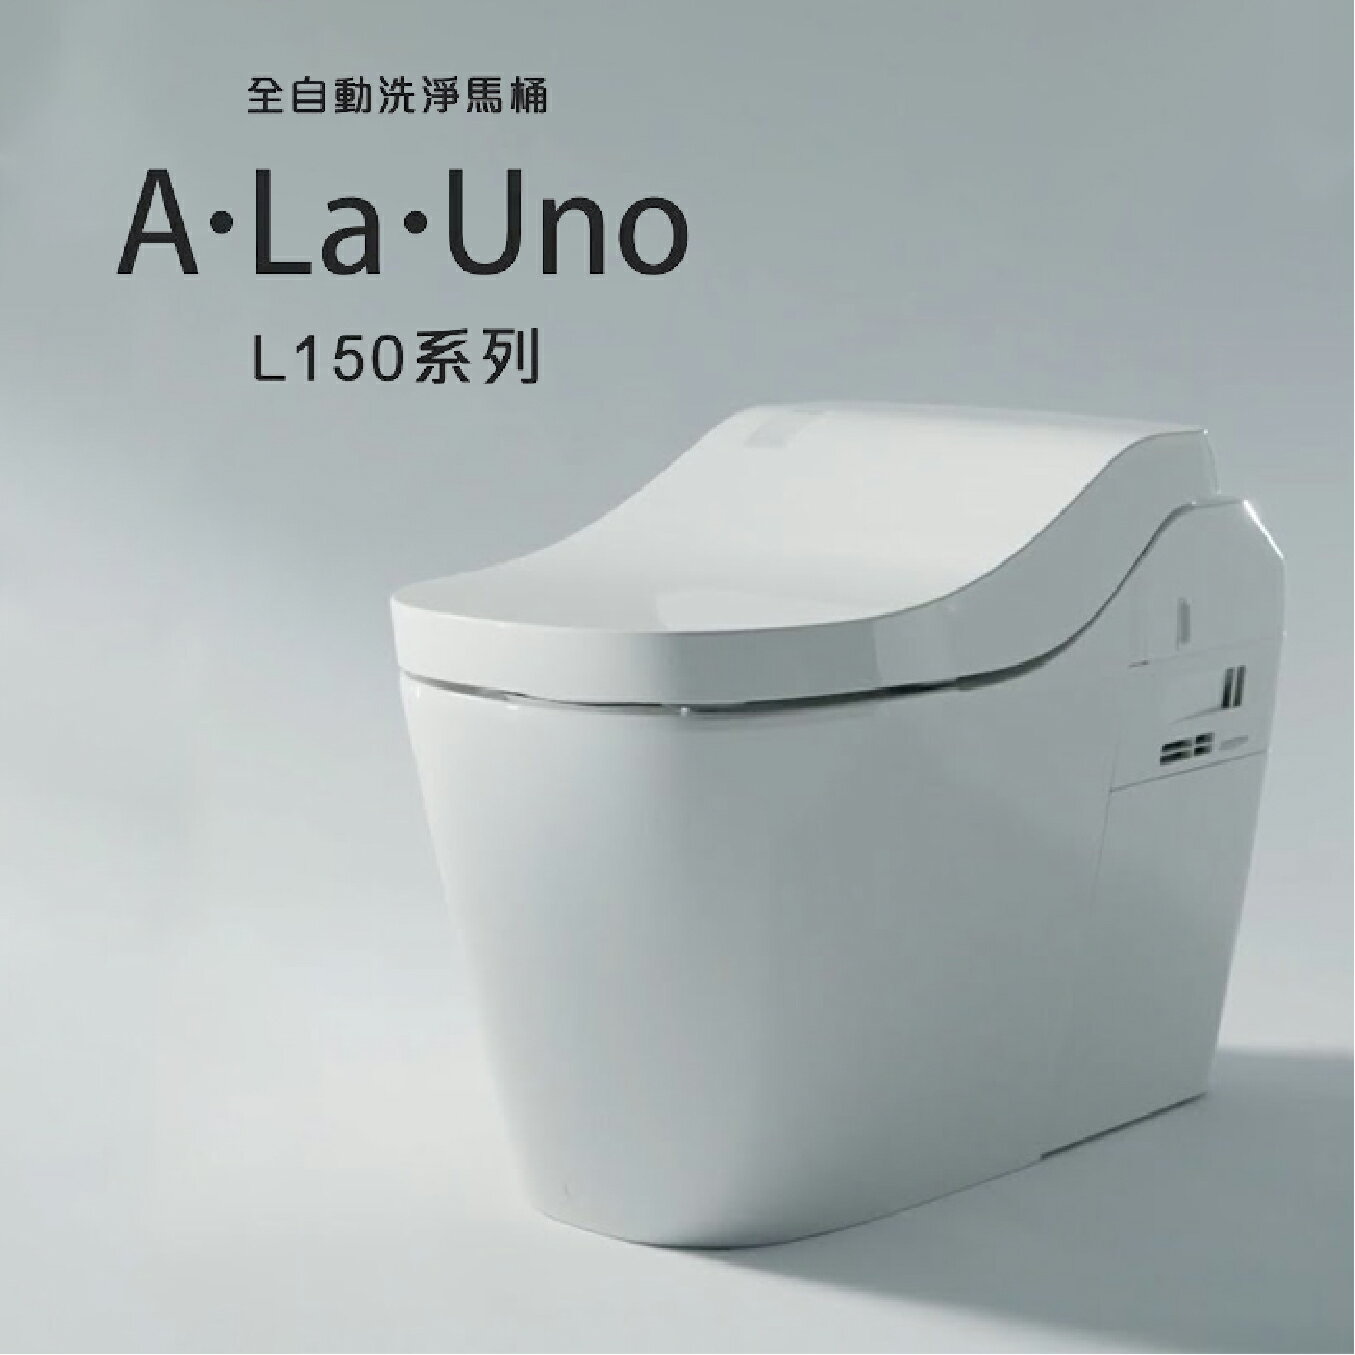 私訊享優惠【新款-白色】Panasonic 全自動馬桶 A LA UNO L150 最新款 台灣公司貨 不銹鋼噴嘴